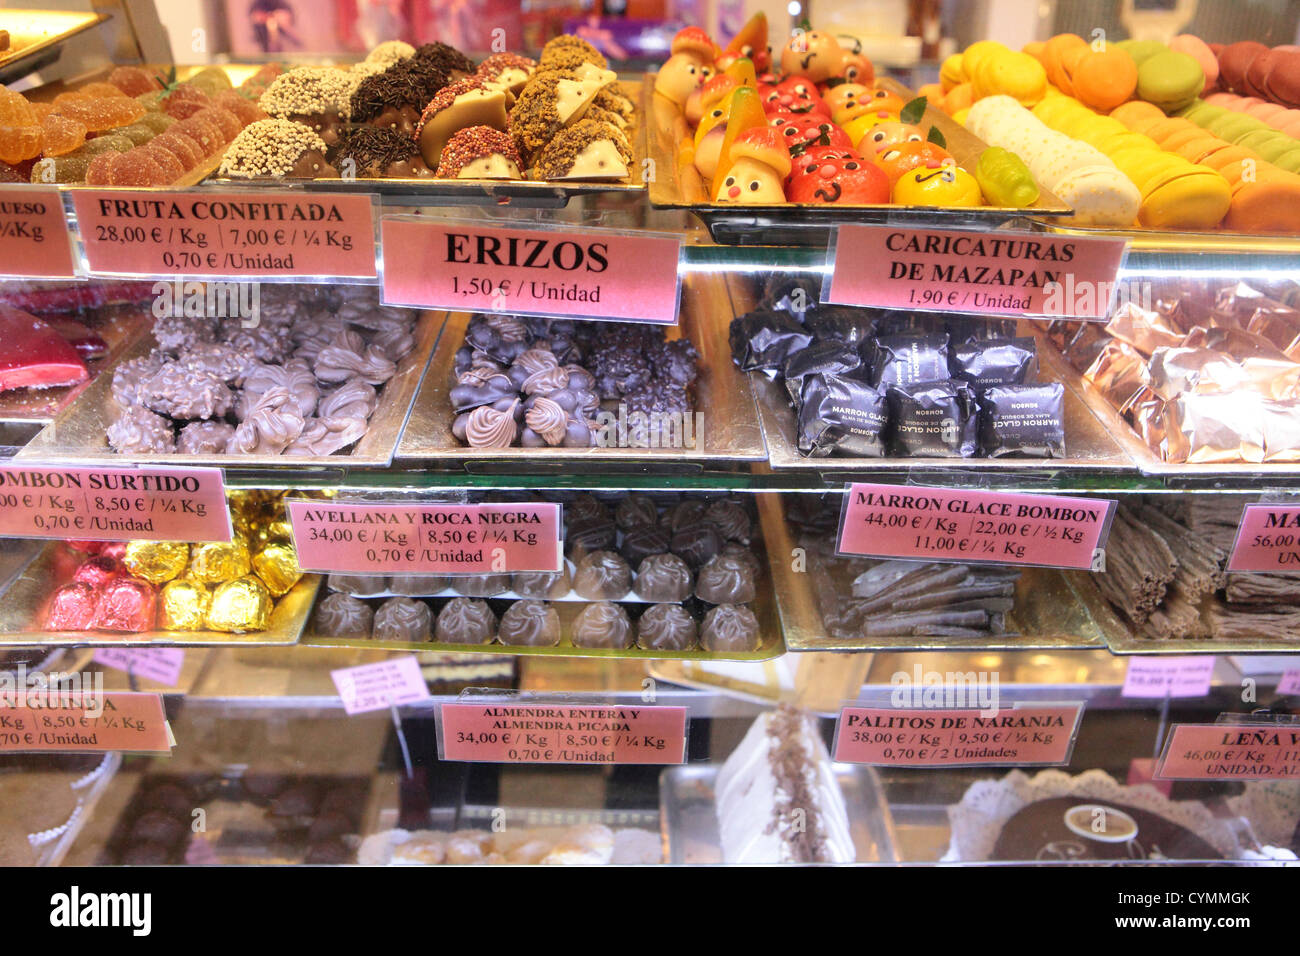 Bonbons chocolats pour vente confiserie boulangerie traditionnelle  Pasteleria, Madrid, Espagne Photo Stock - Alamy